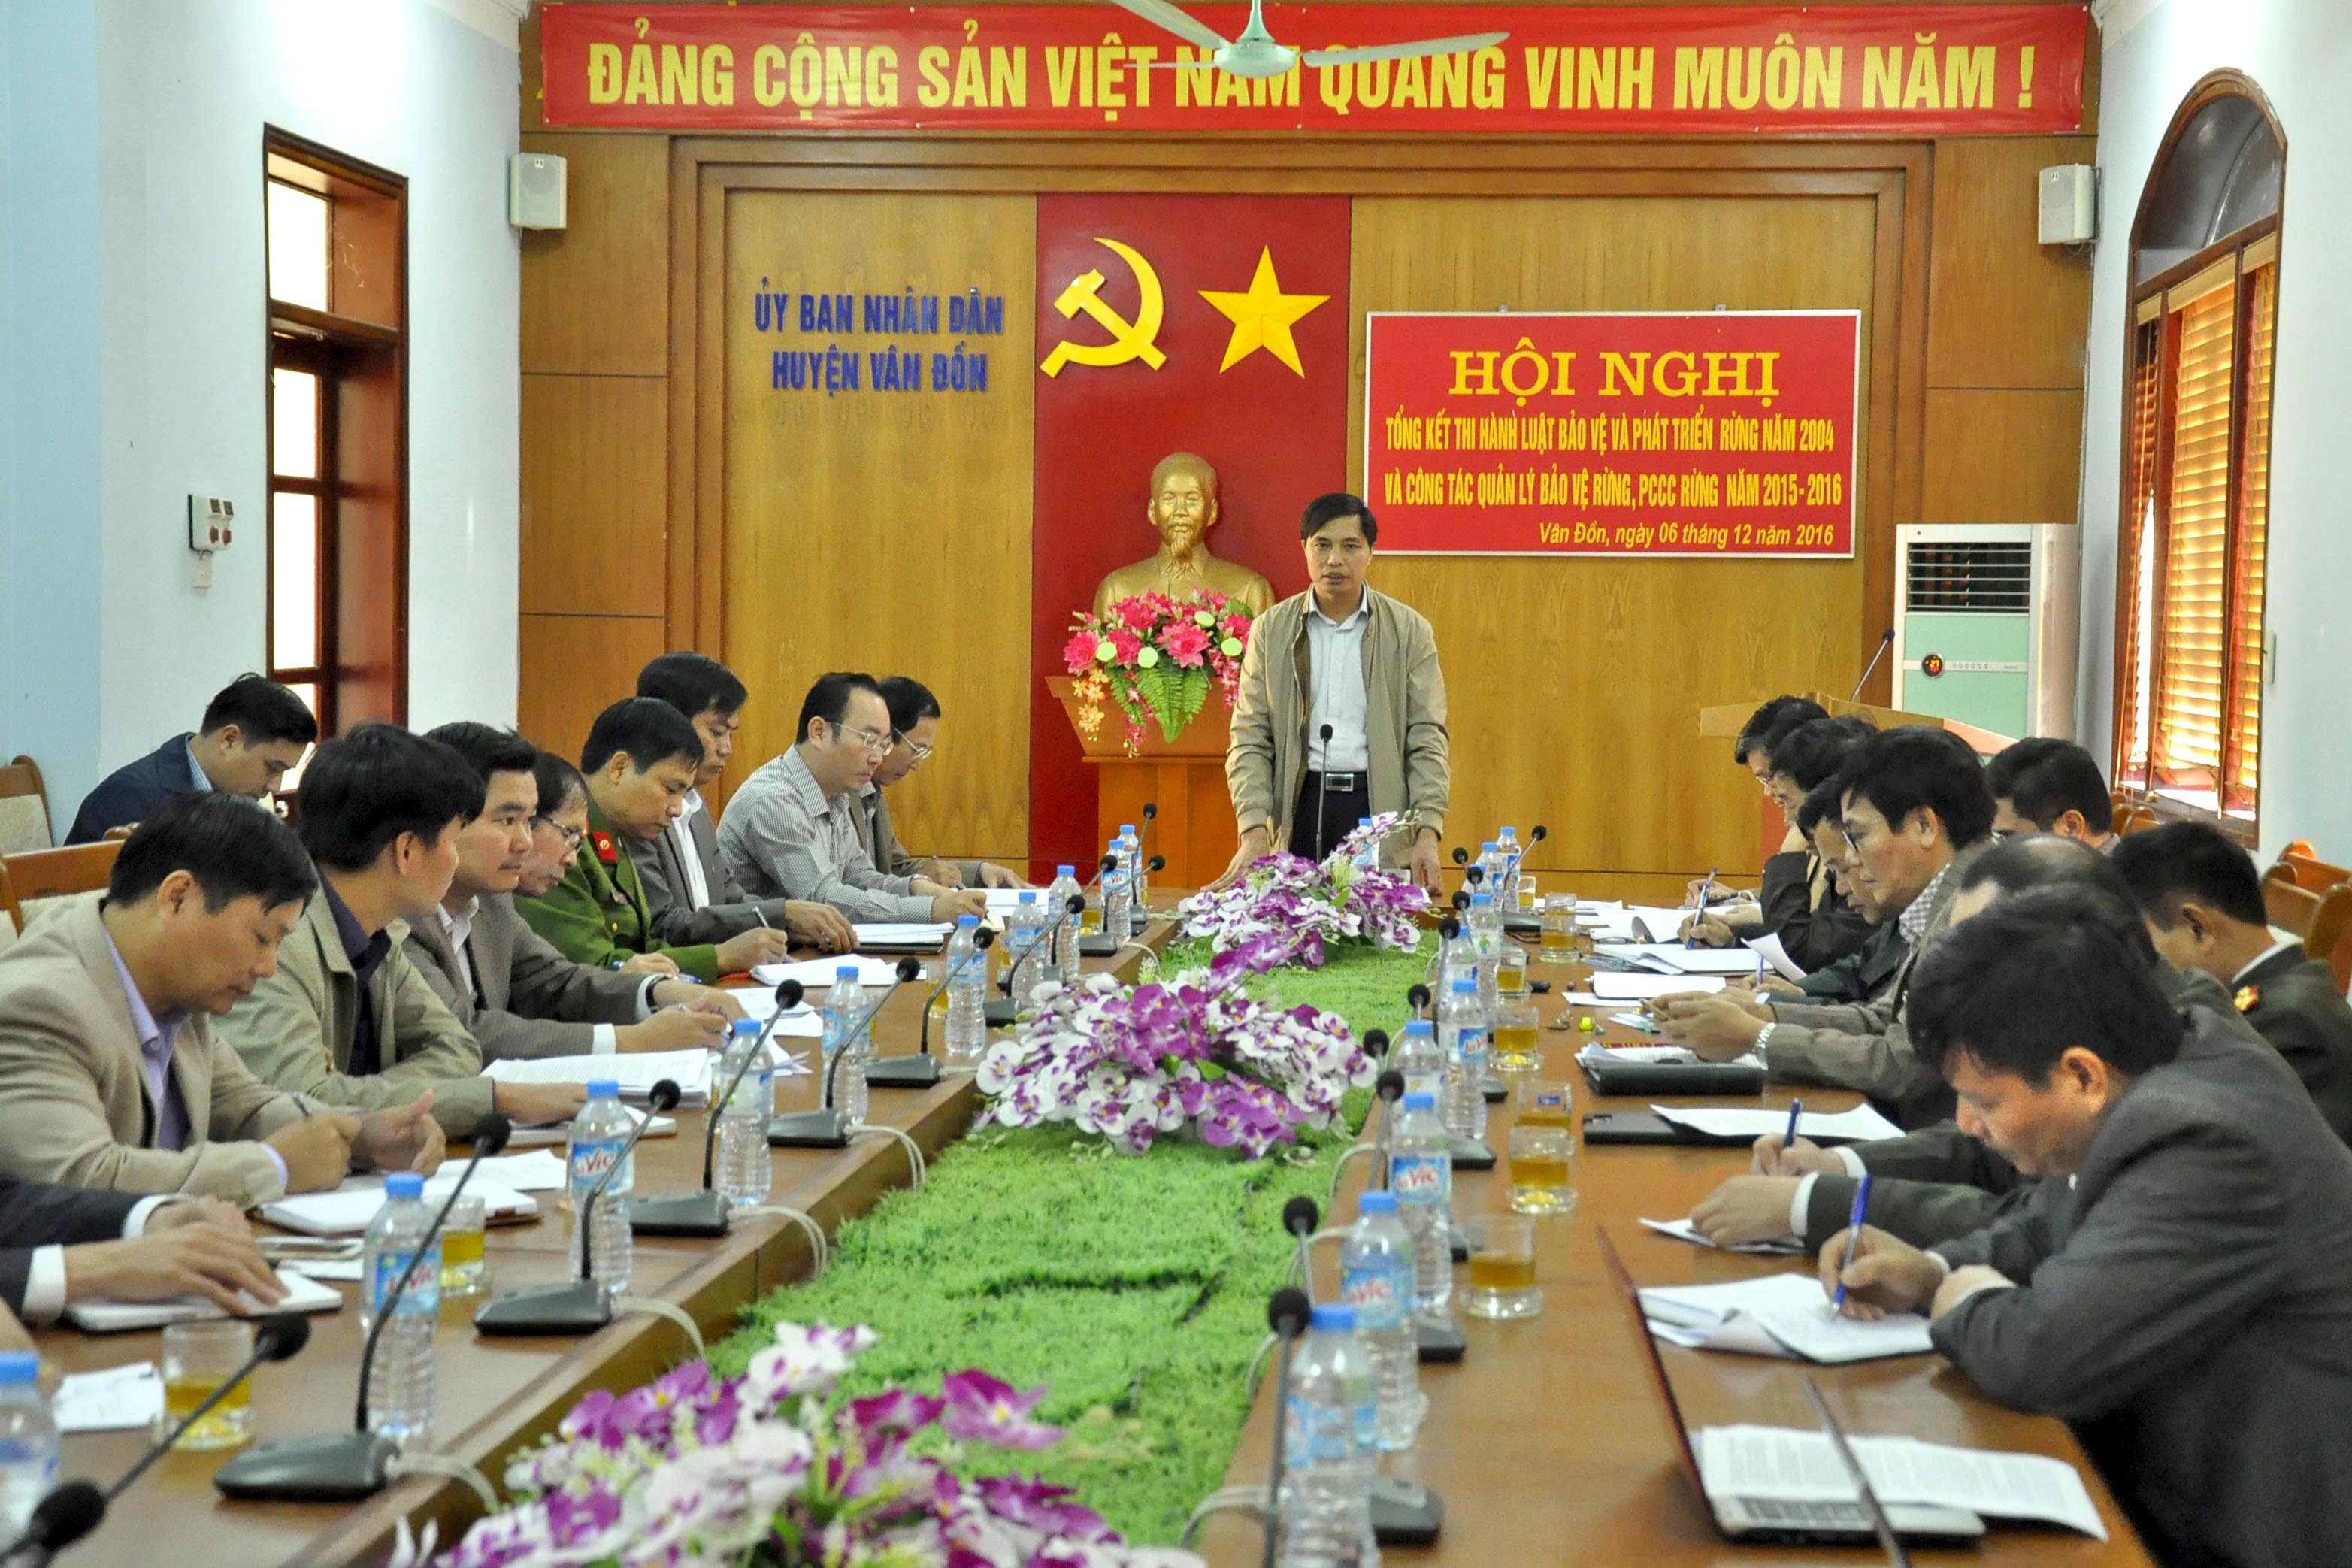 Đồng chí Vũ Văn Diện, Phó Chủ tịch UBND huyện yêu cầu huyện Vân Đồn, các ngành giải quyết dứt điểm những vụ việc KNTC kéo dài trên địa bàn.